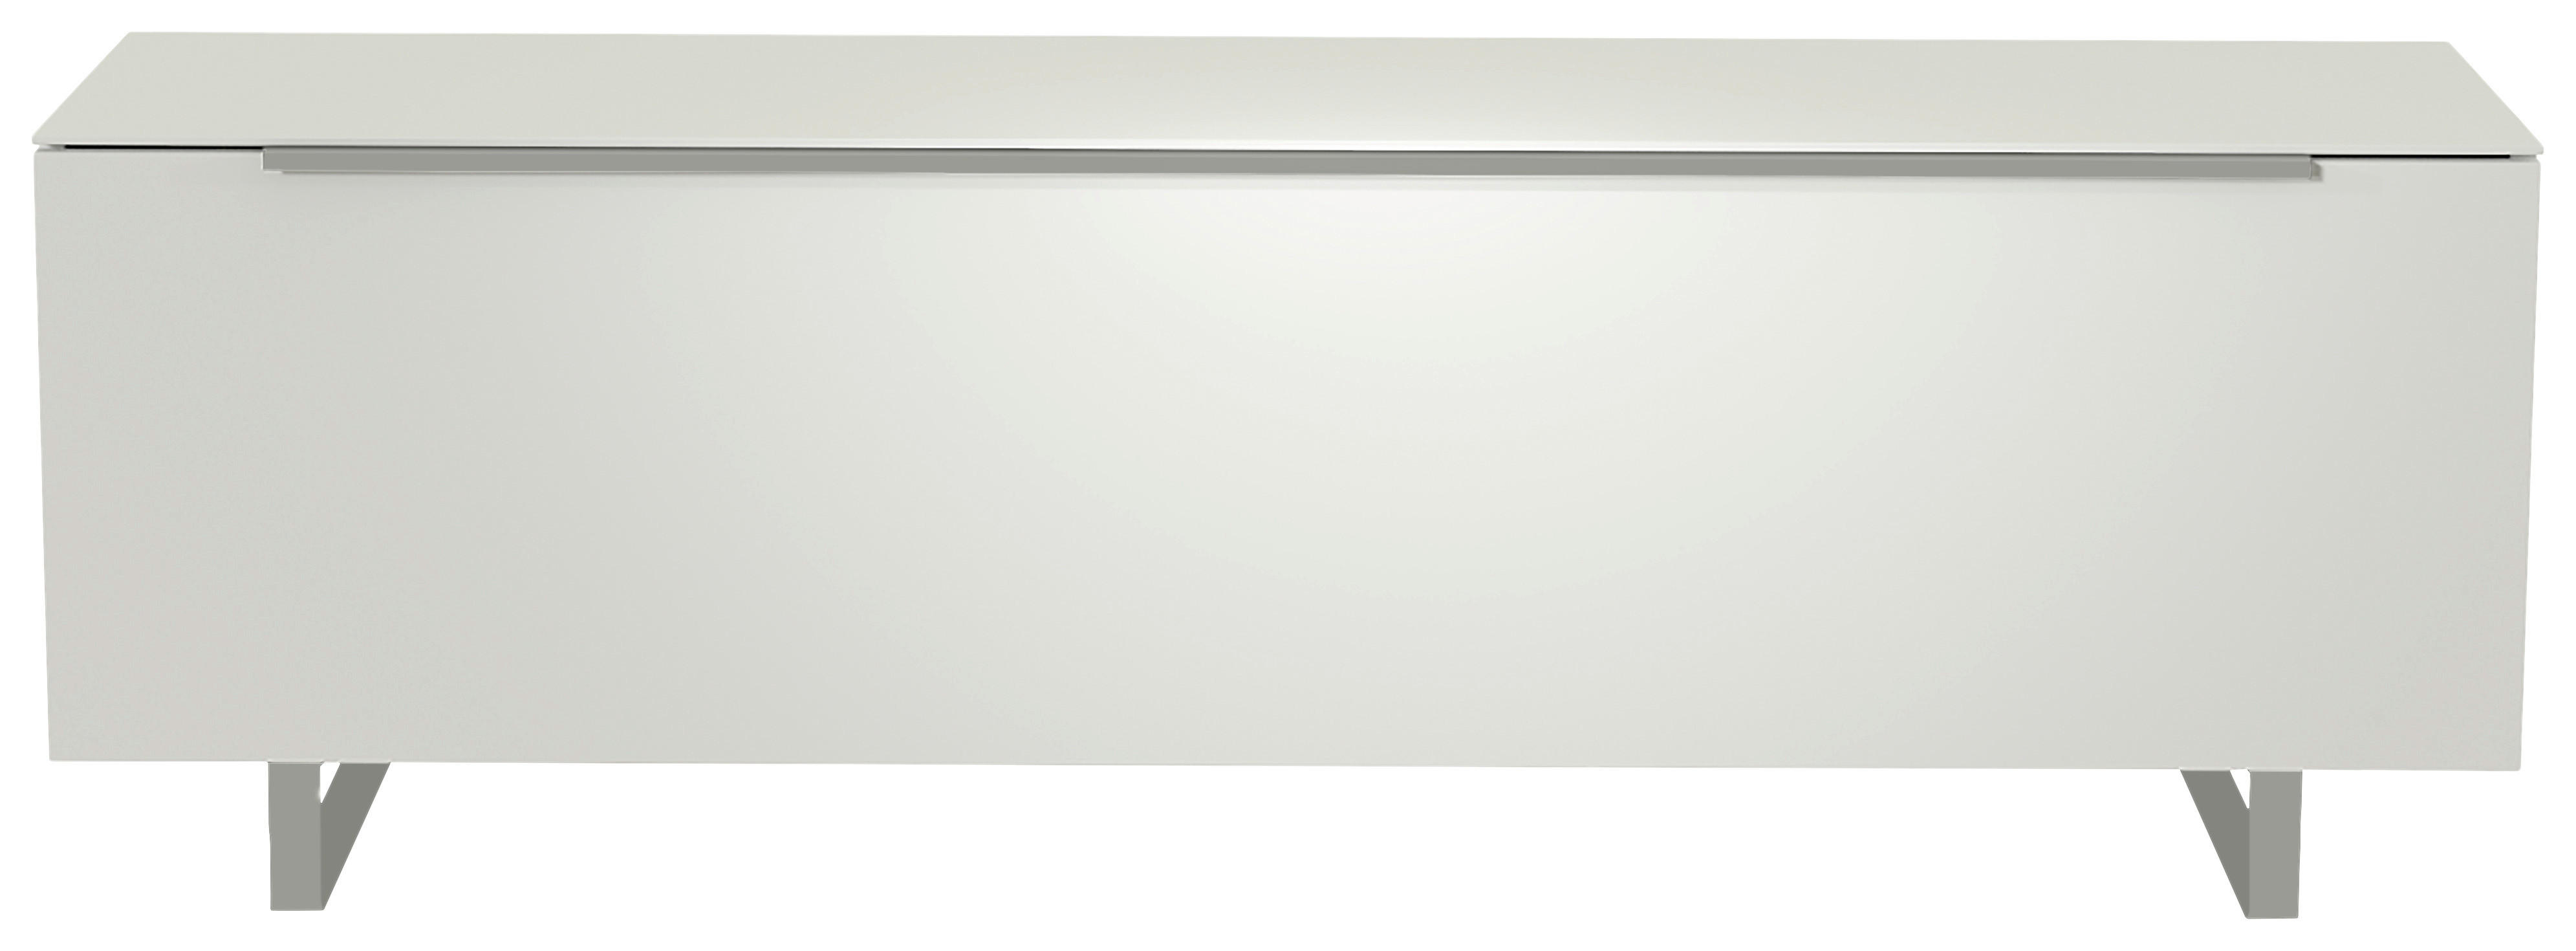 LOWBOARD Weiß, Alufarben  - Alufarben/Weiß, Design, Glas/Holzwerkstoff (160/51/45cm) - Moderano